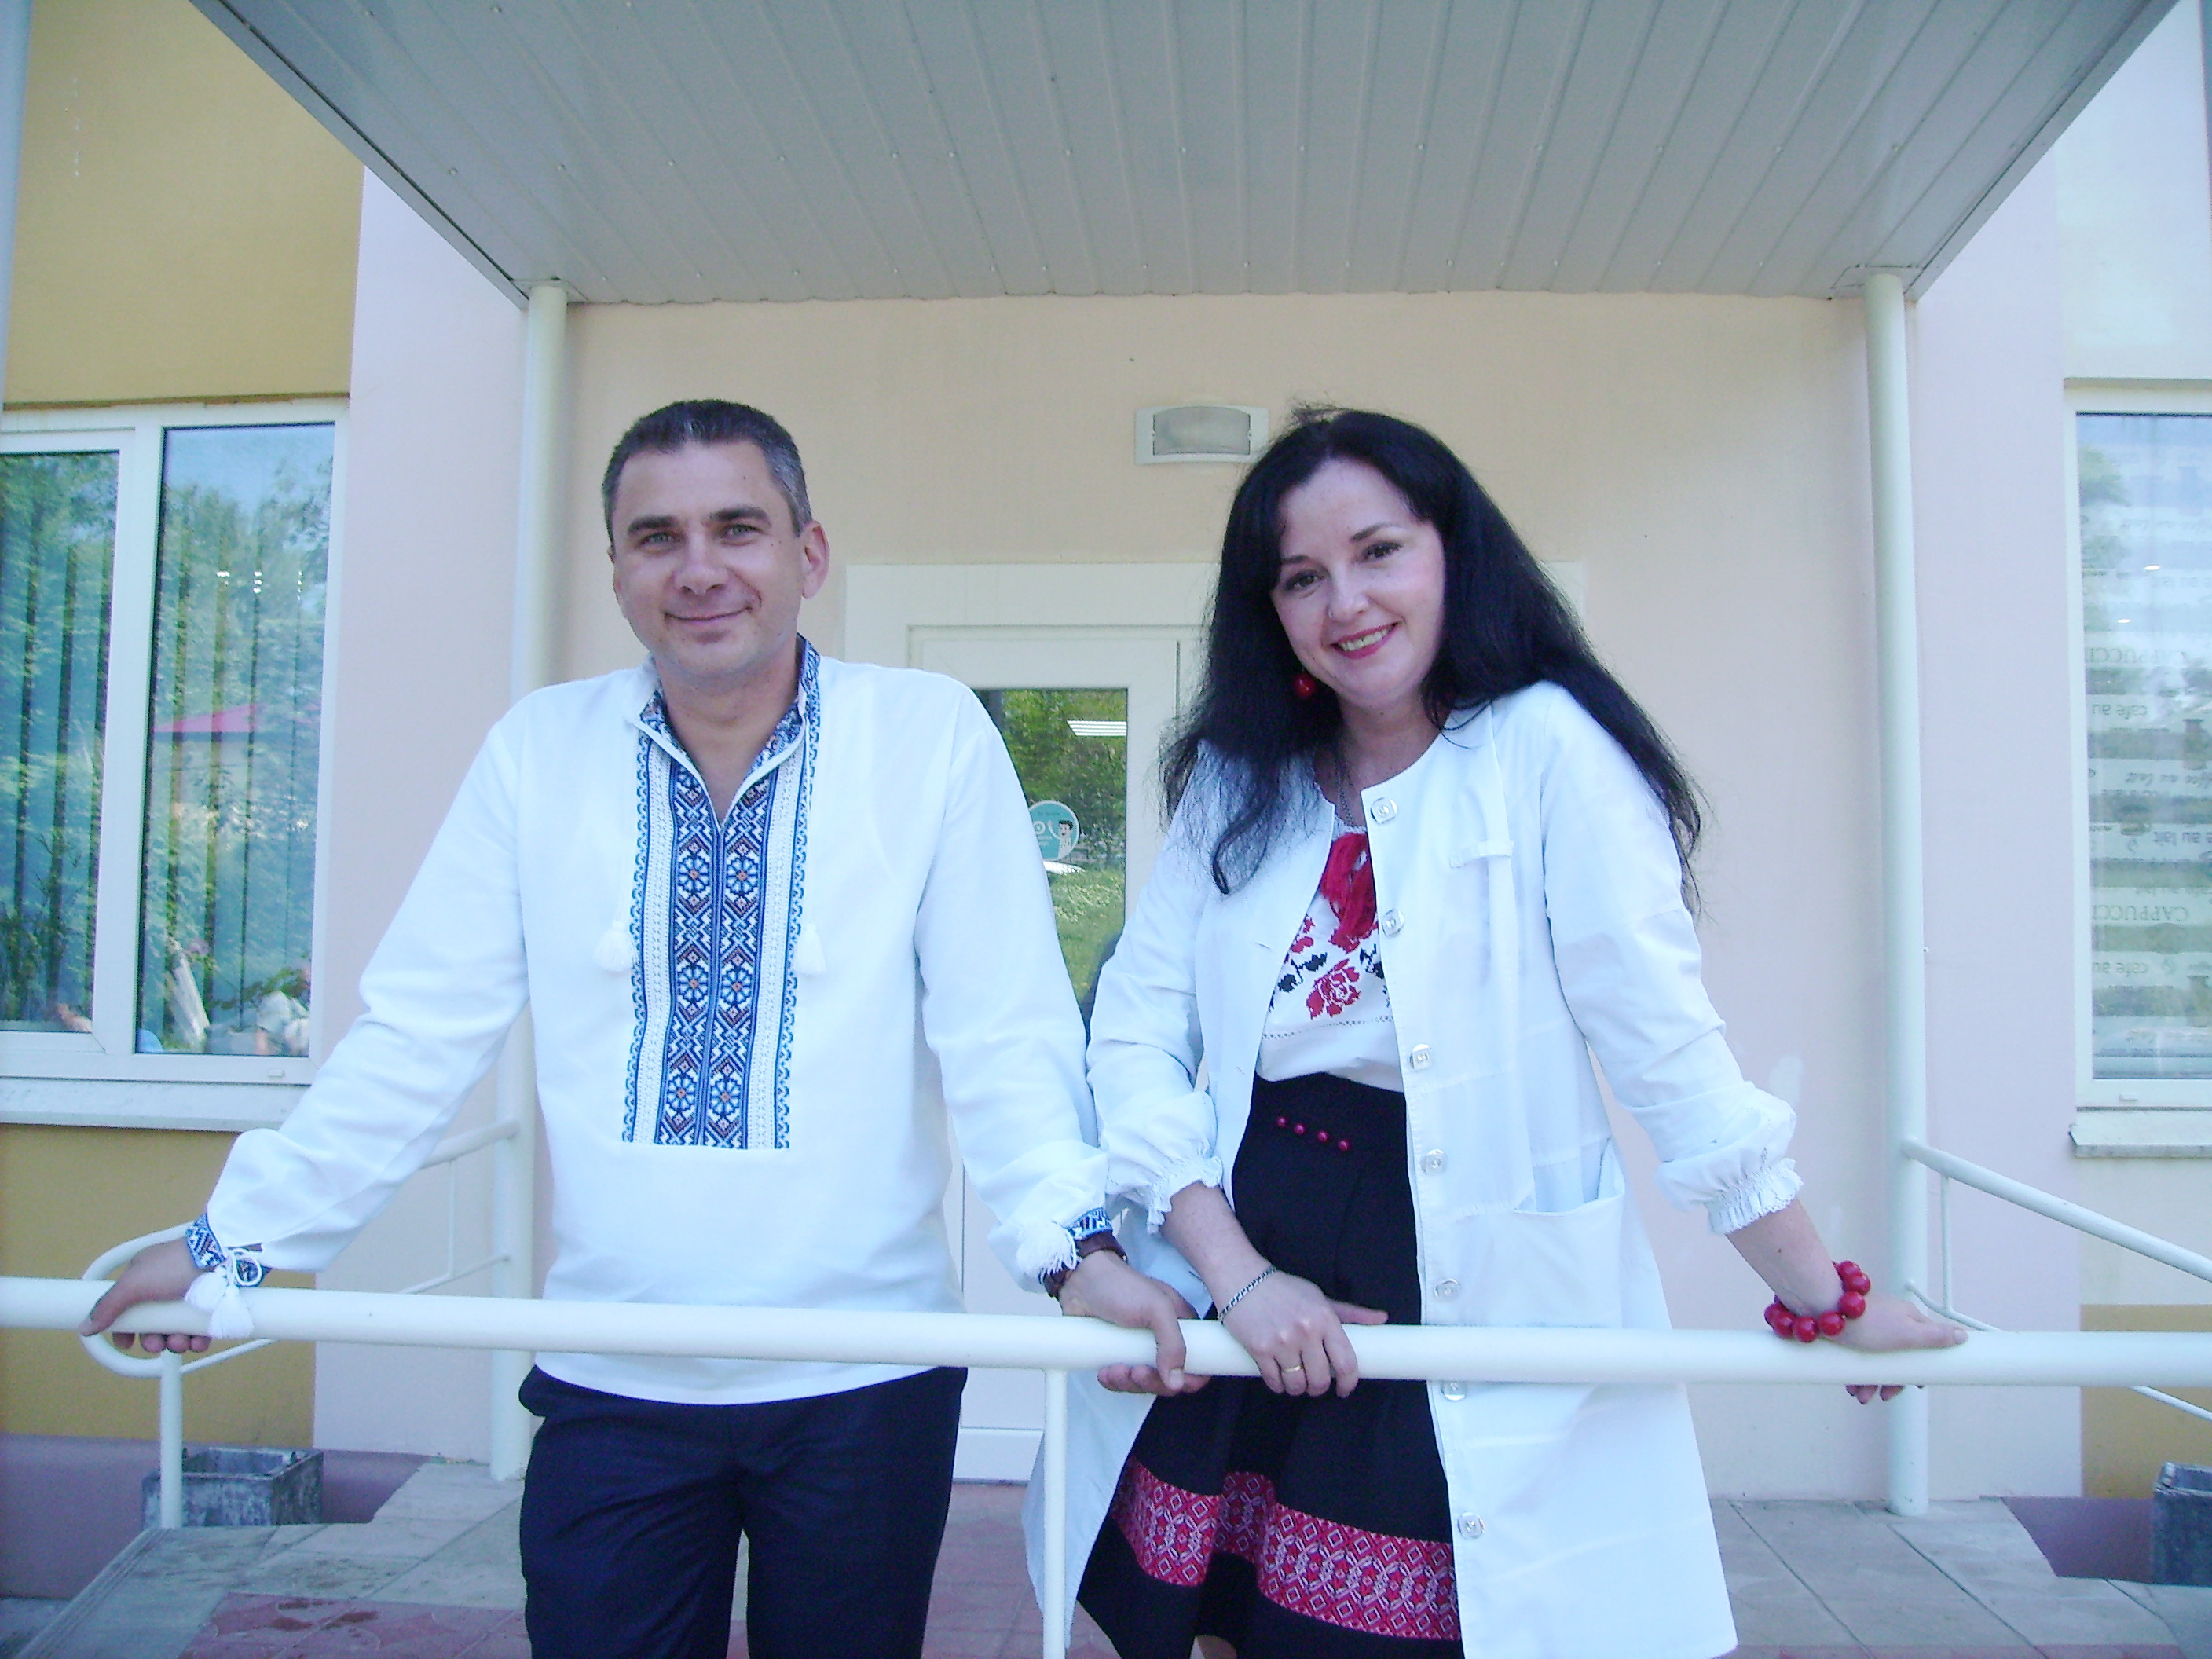 Головний лікар Роман Чередниченко вважає, що таким медичним закладом можна пишатися. Фото автора